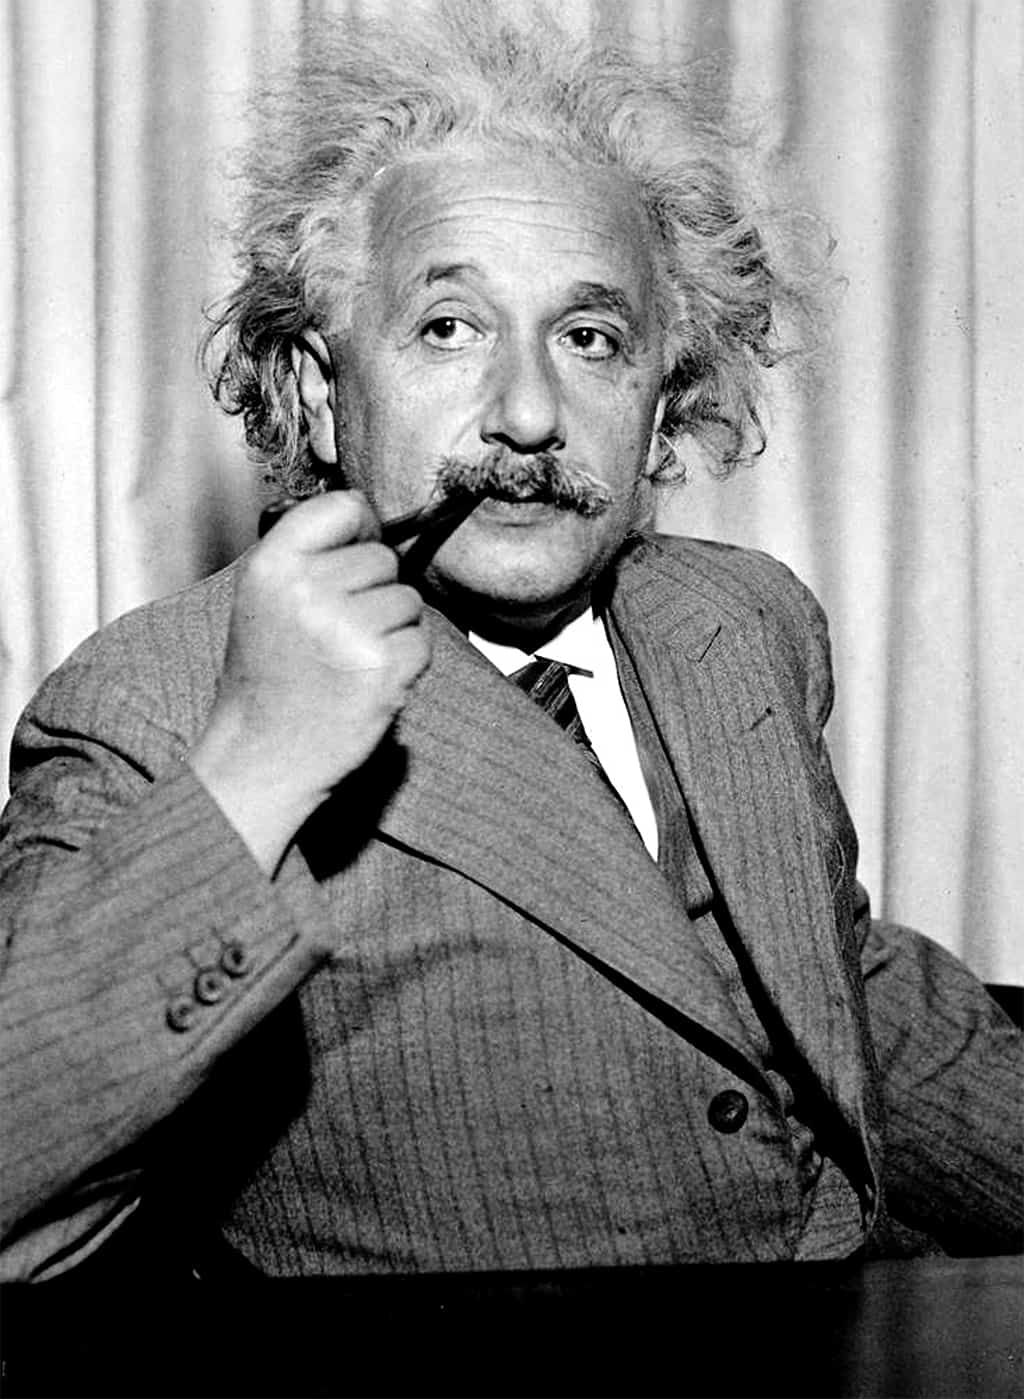 كان العبقري آينشتاين مدخنًا لفترة طويلة من حياته، وهو ما جعل البعض يعتقد أن ذلك ربما يكون سبب وفاته.